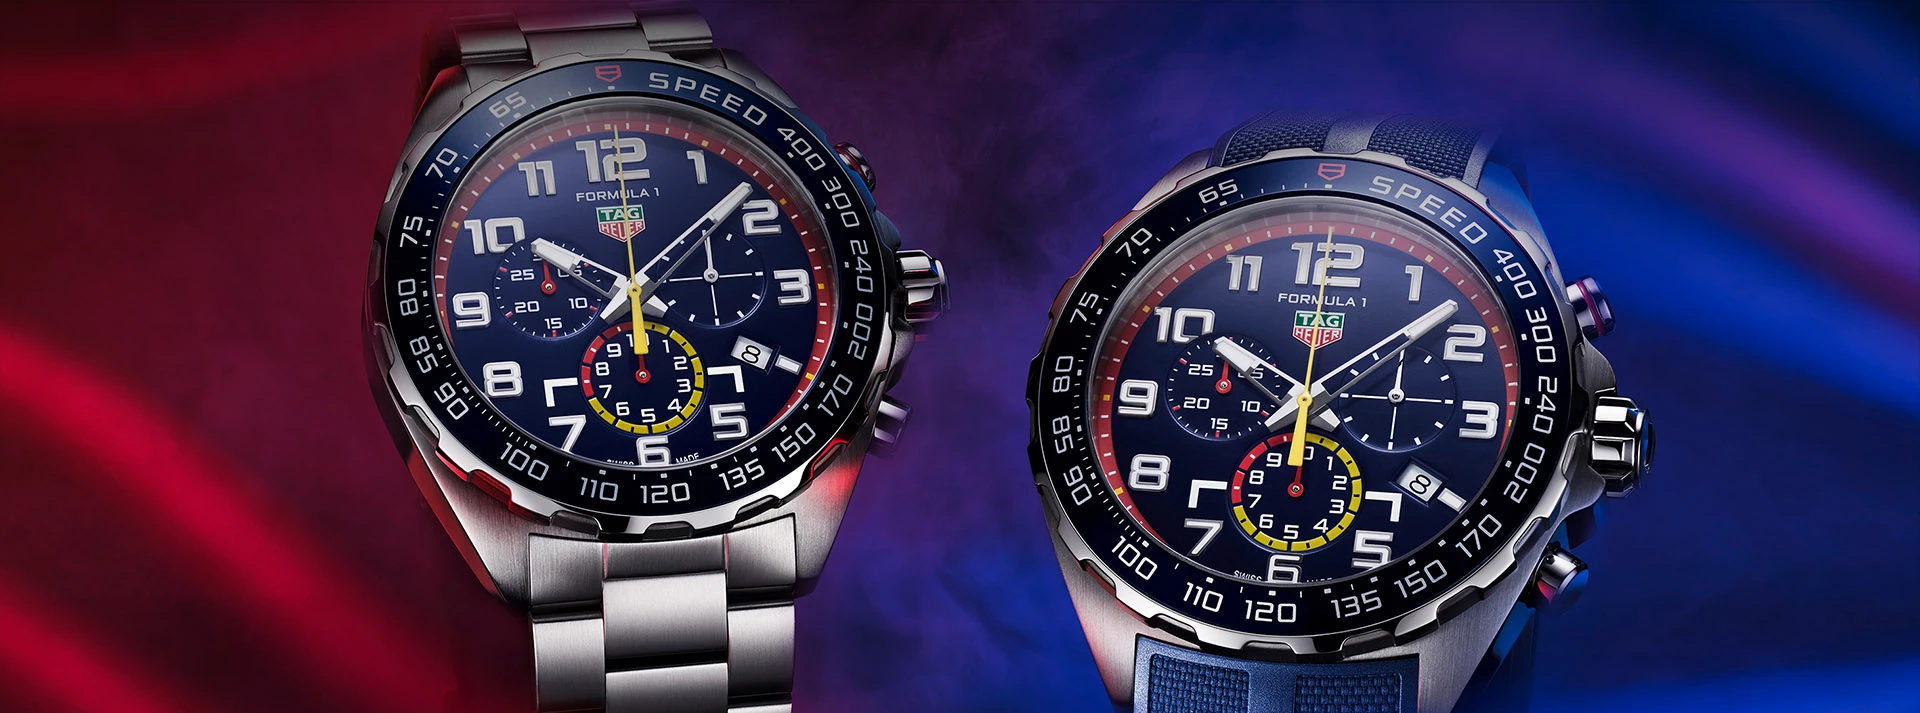 TAG Heuer Formula 1 Watches - Authorised UK Retailer